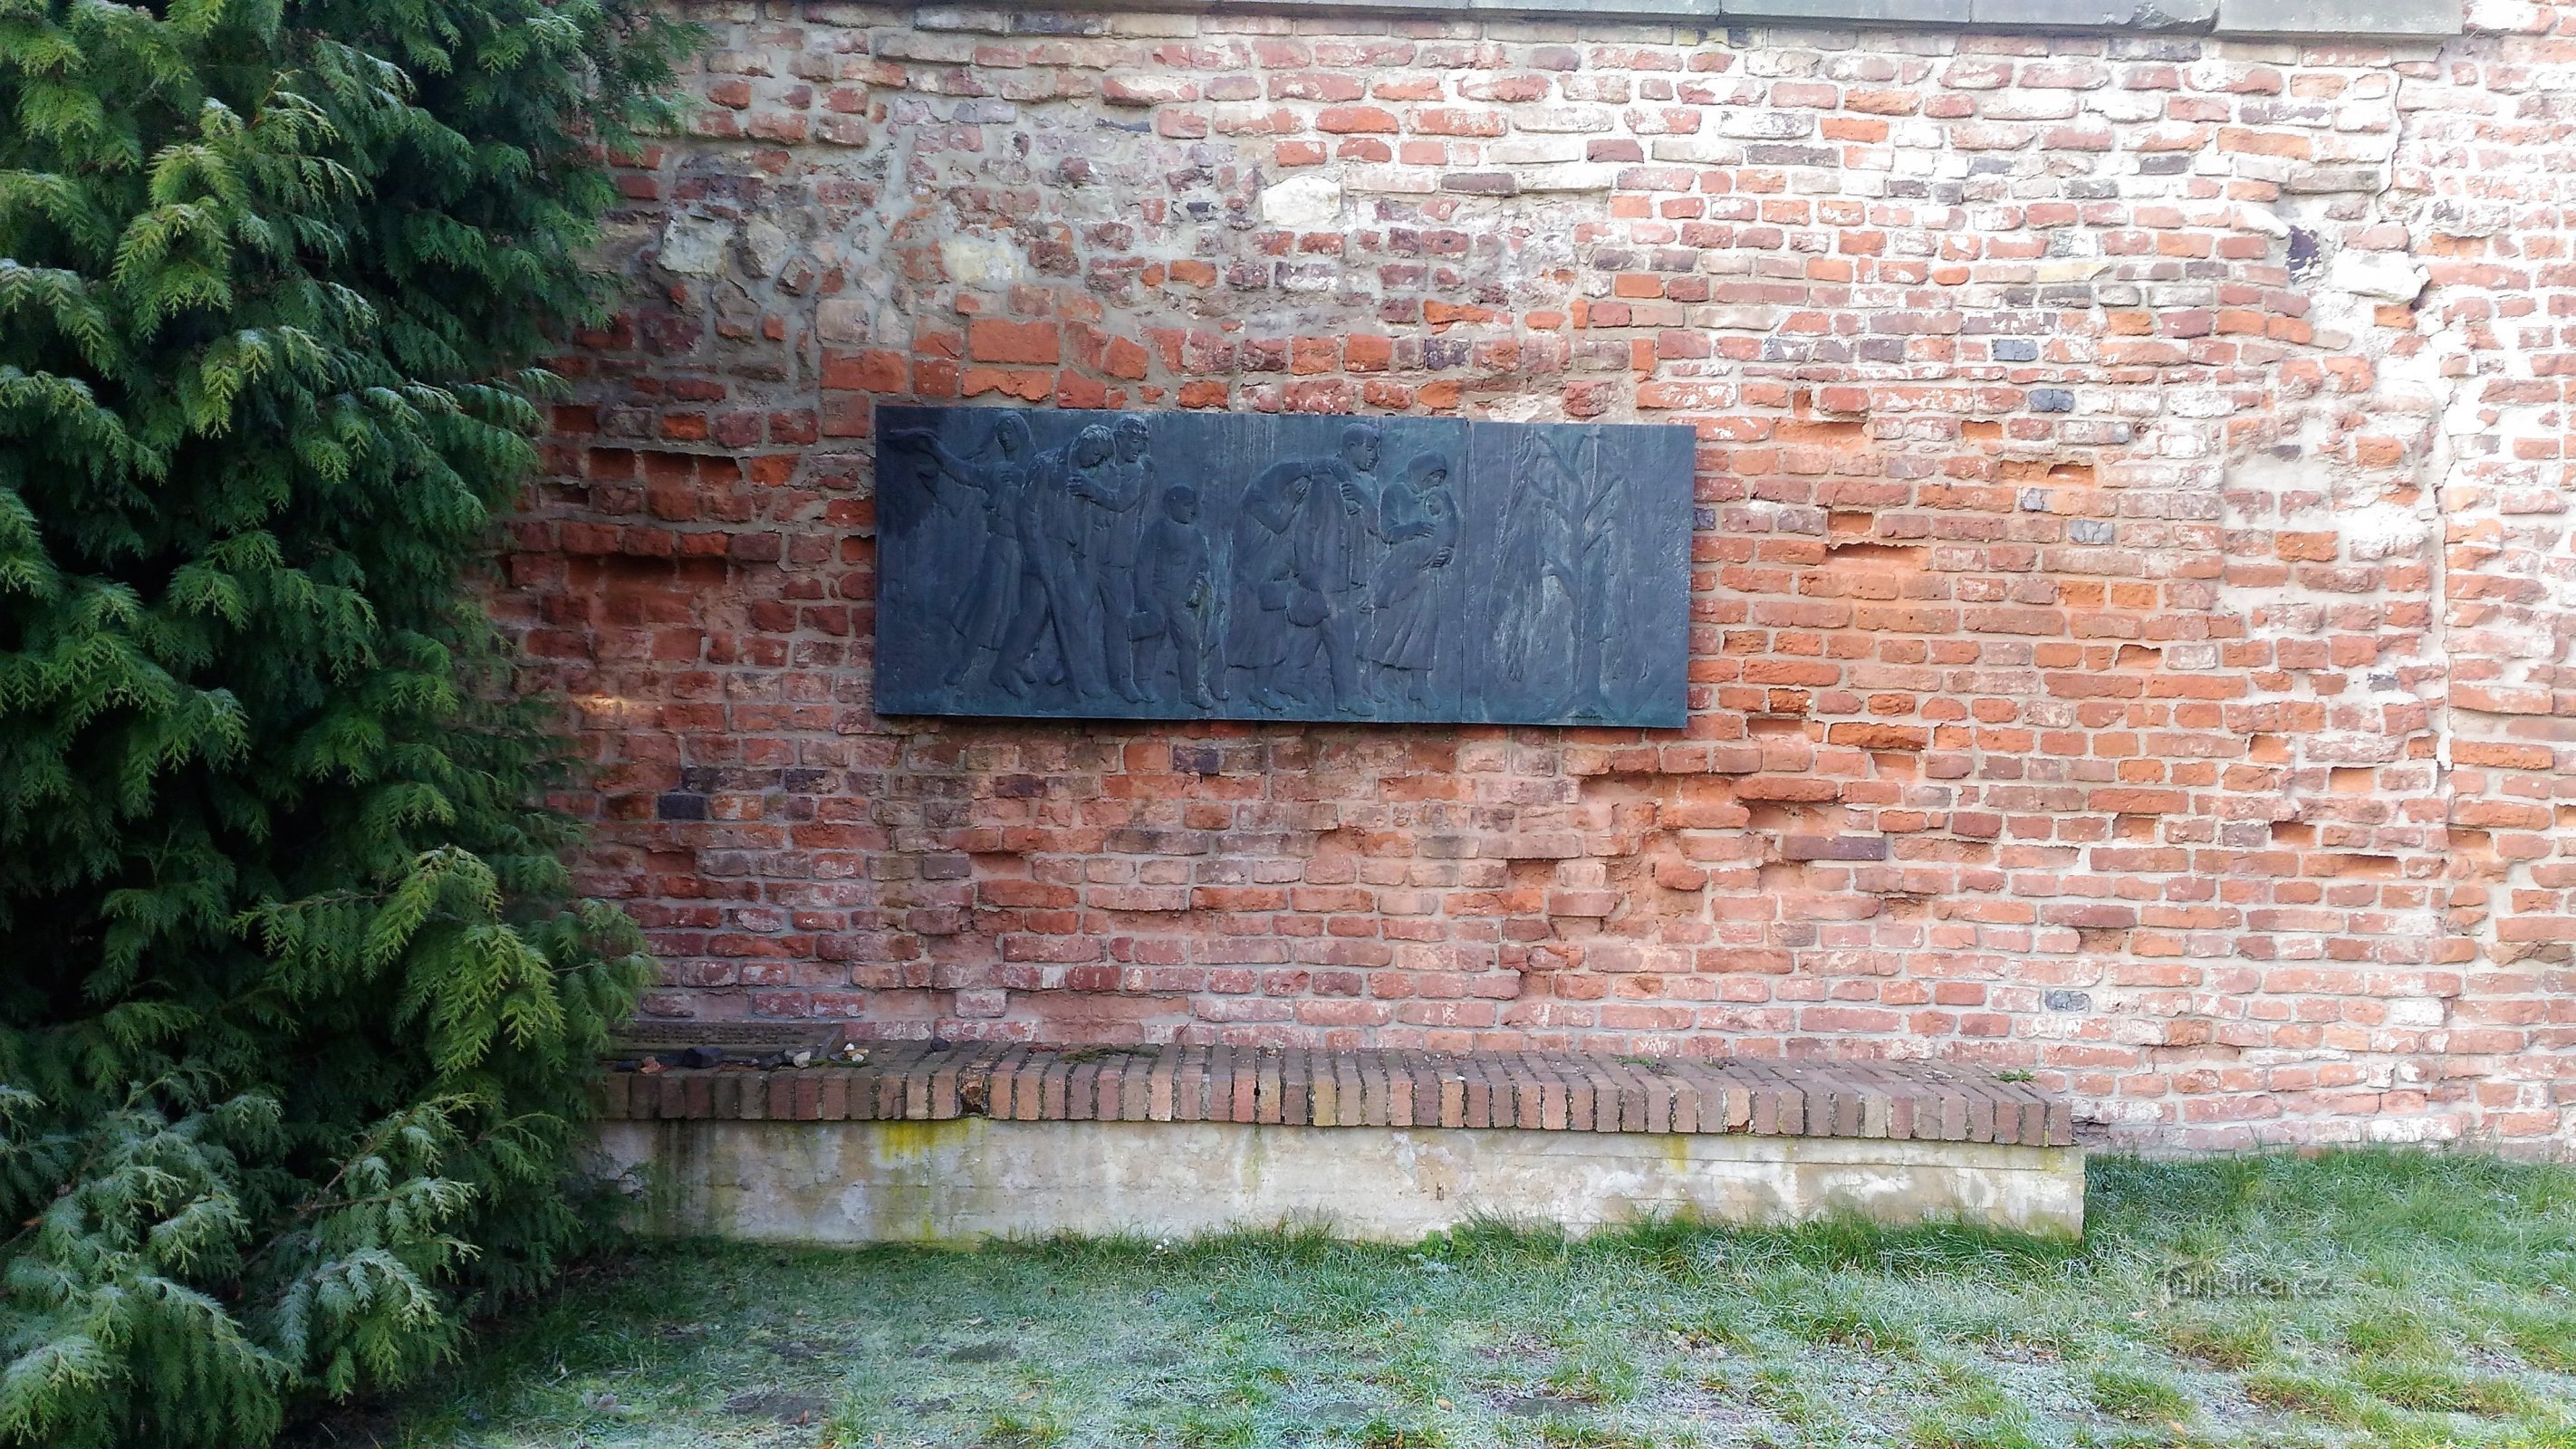 Памятник транспортной развязке в Терезине.